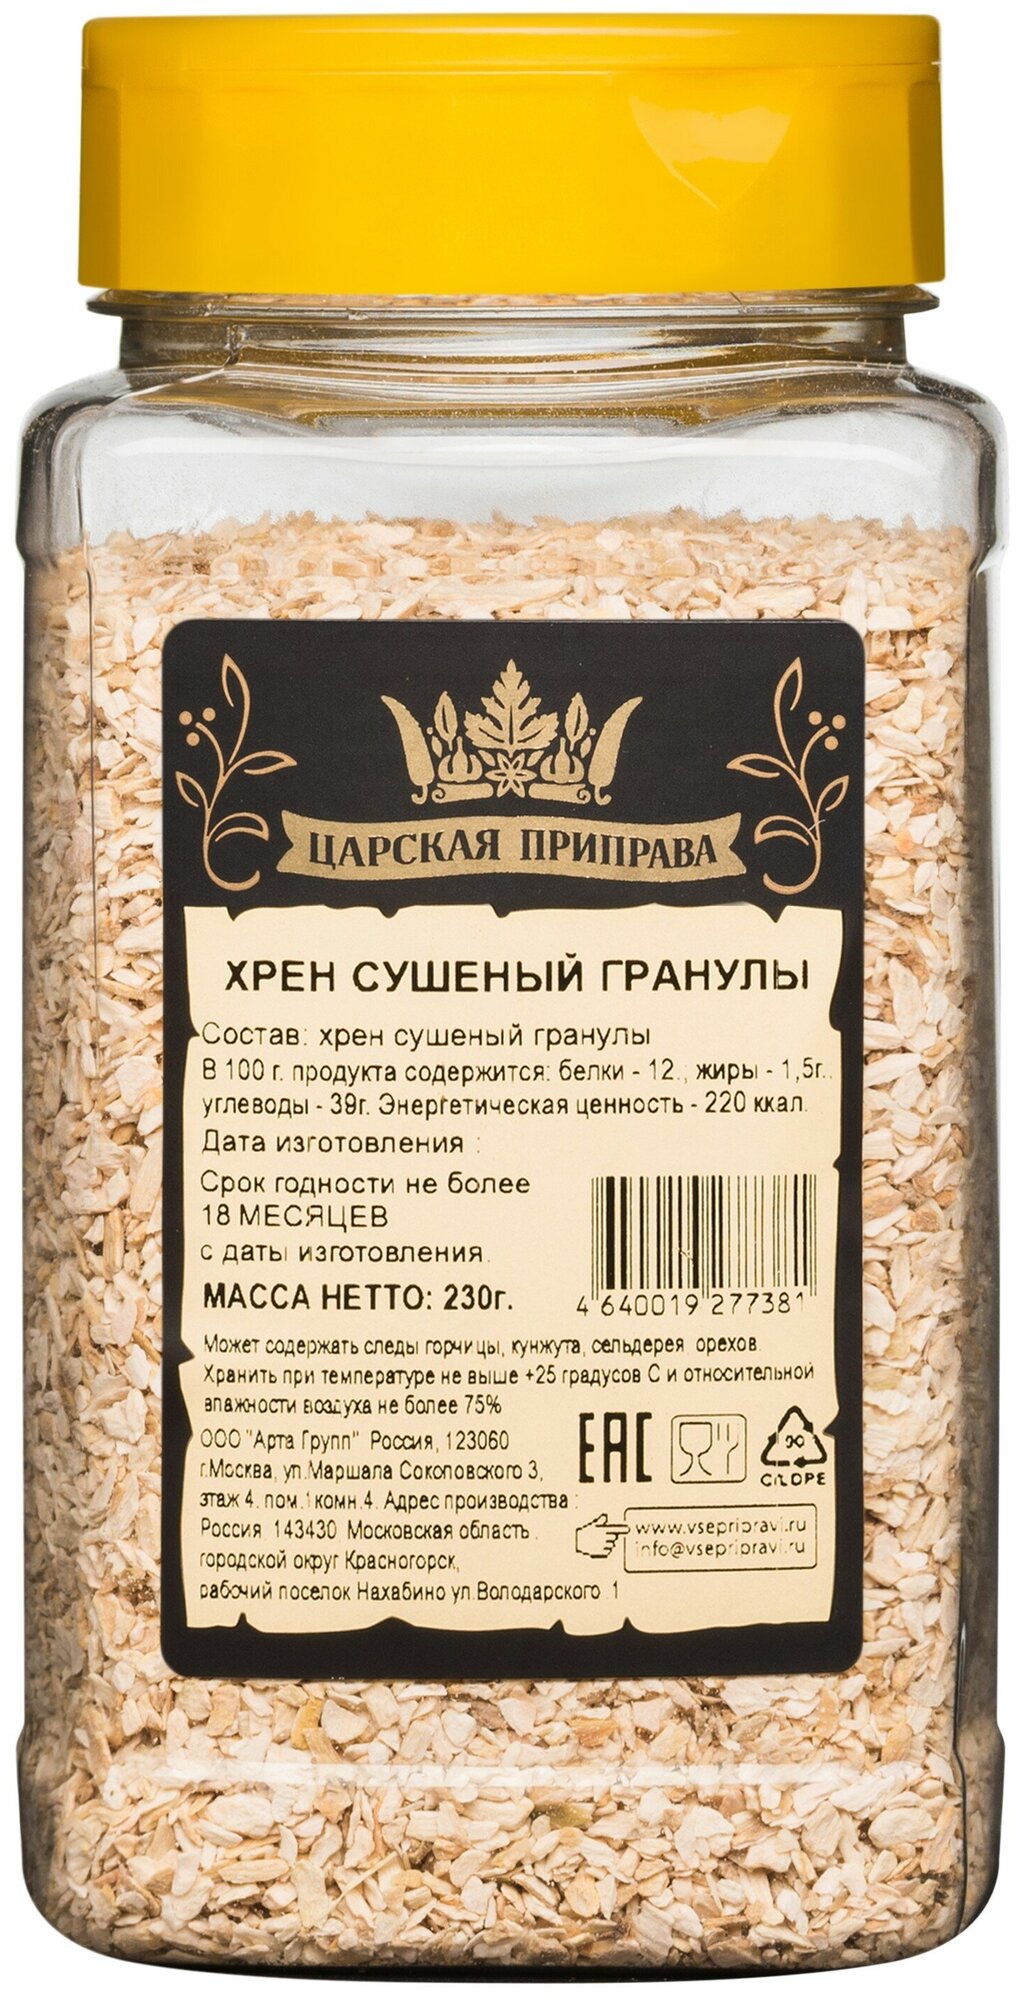 Хрен сушеный гранулы "Царская приправа" ПЭТ с дозатором, 230 г — купить в интернет-магазине по низкой цене на Яндекс Маркете